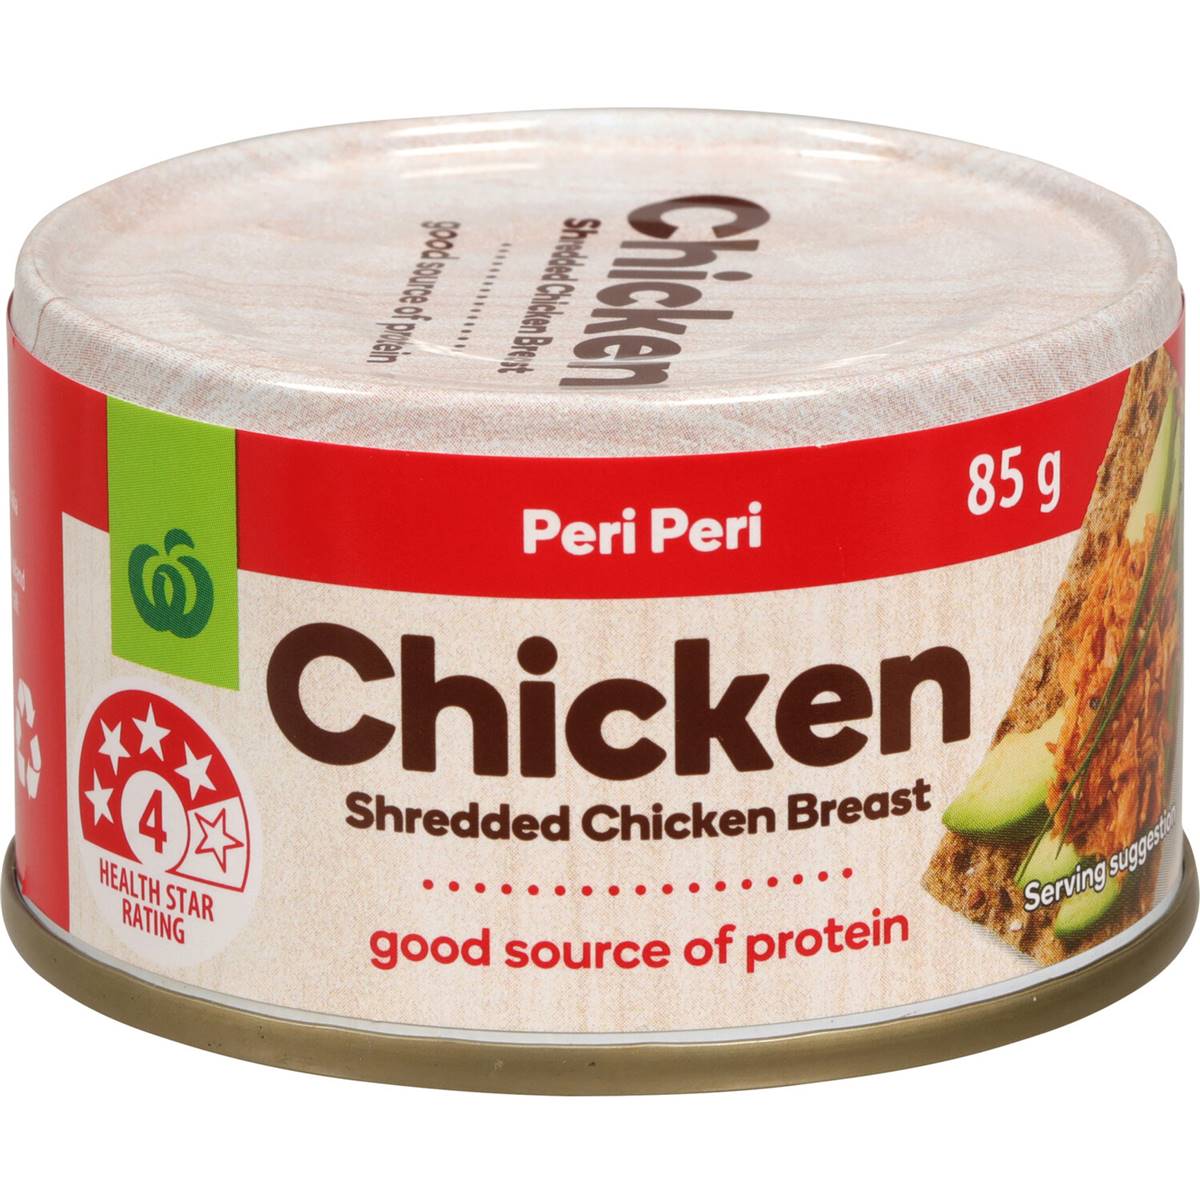 Woolworths Canned Shredded Chicken Peri Peri